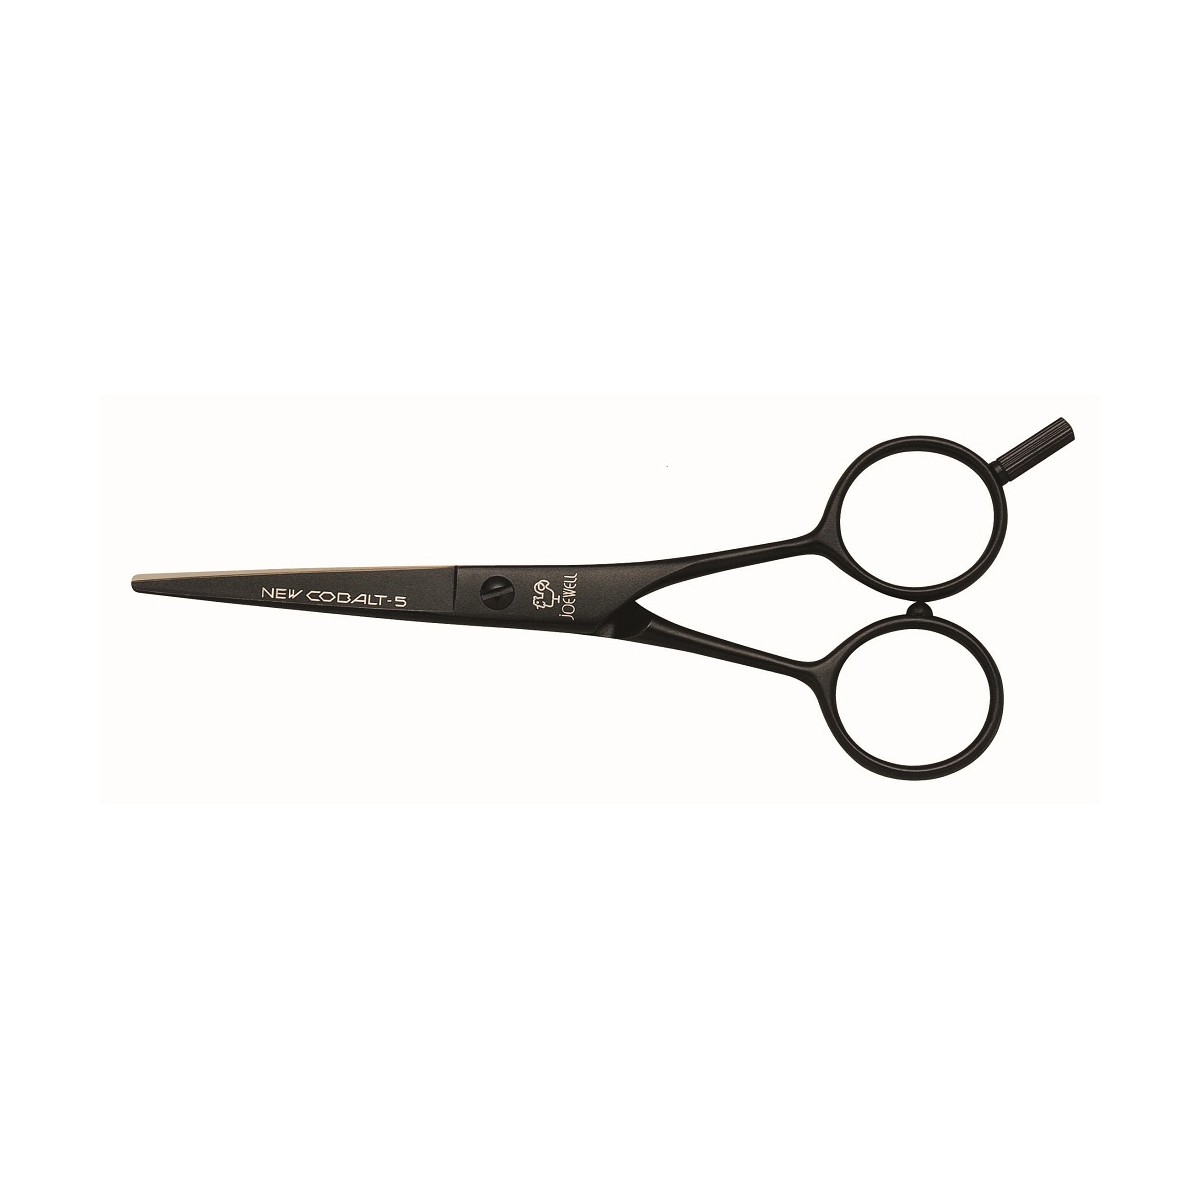 Fancy Hair Scissors Clip Art - Free Clipart Images